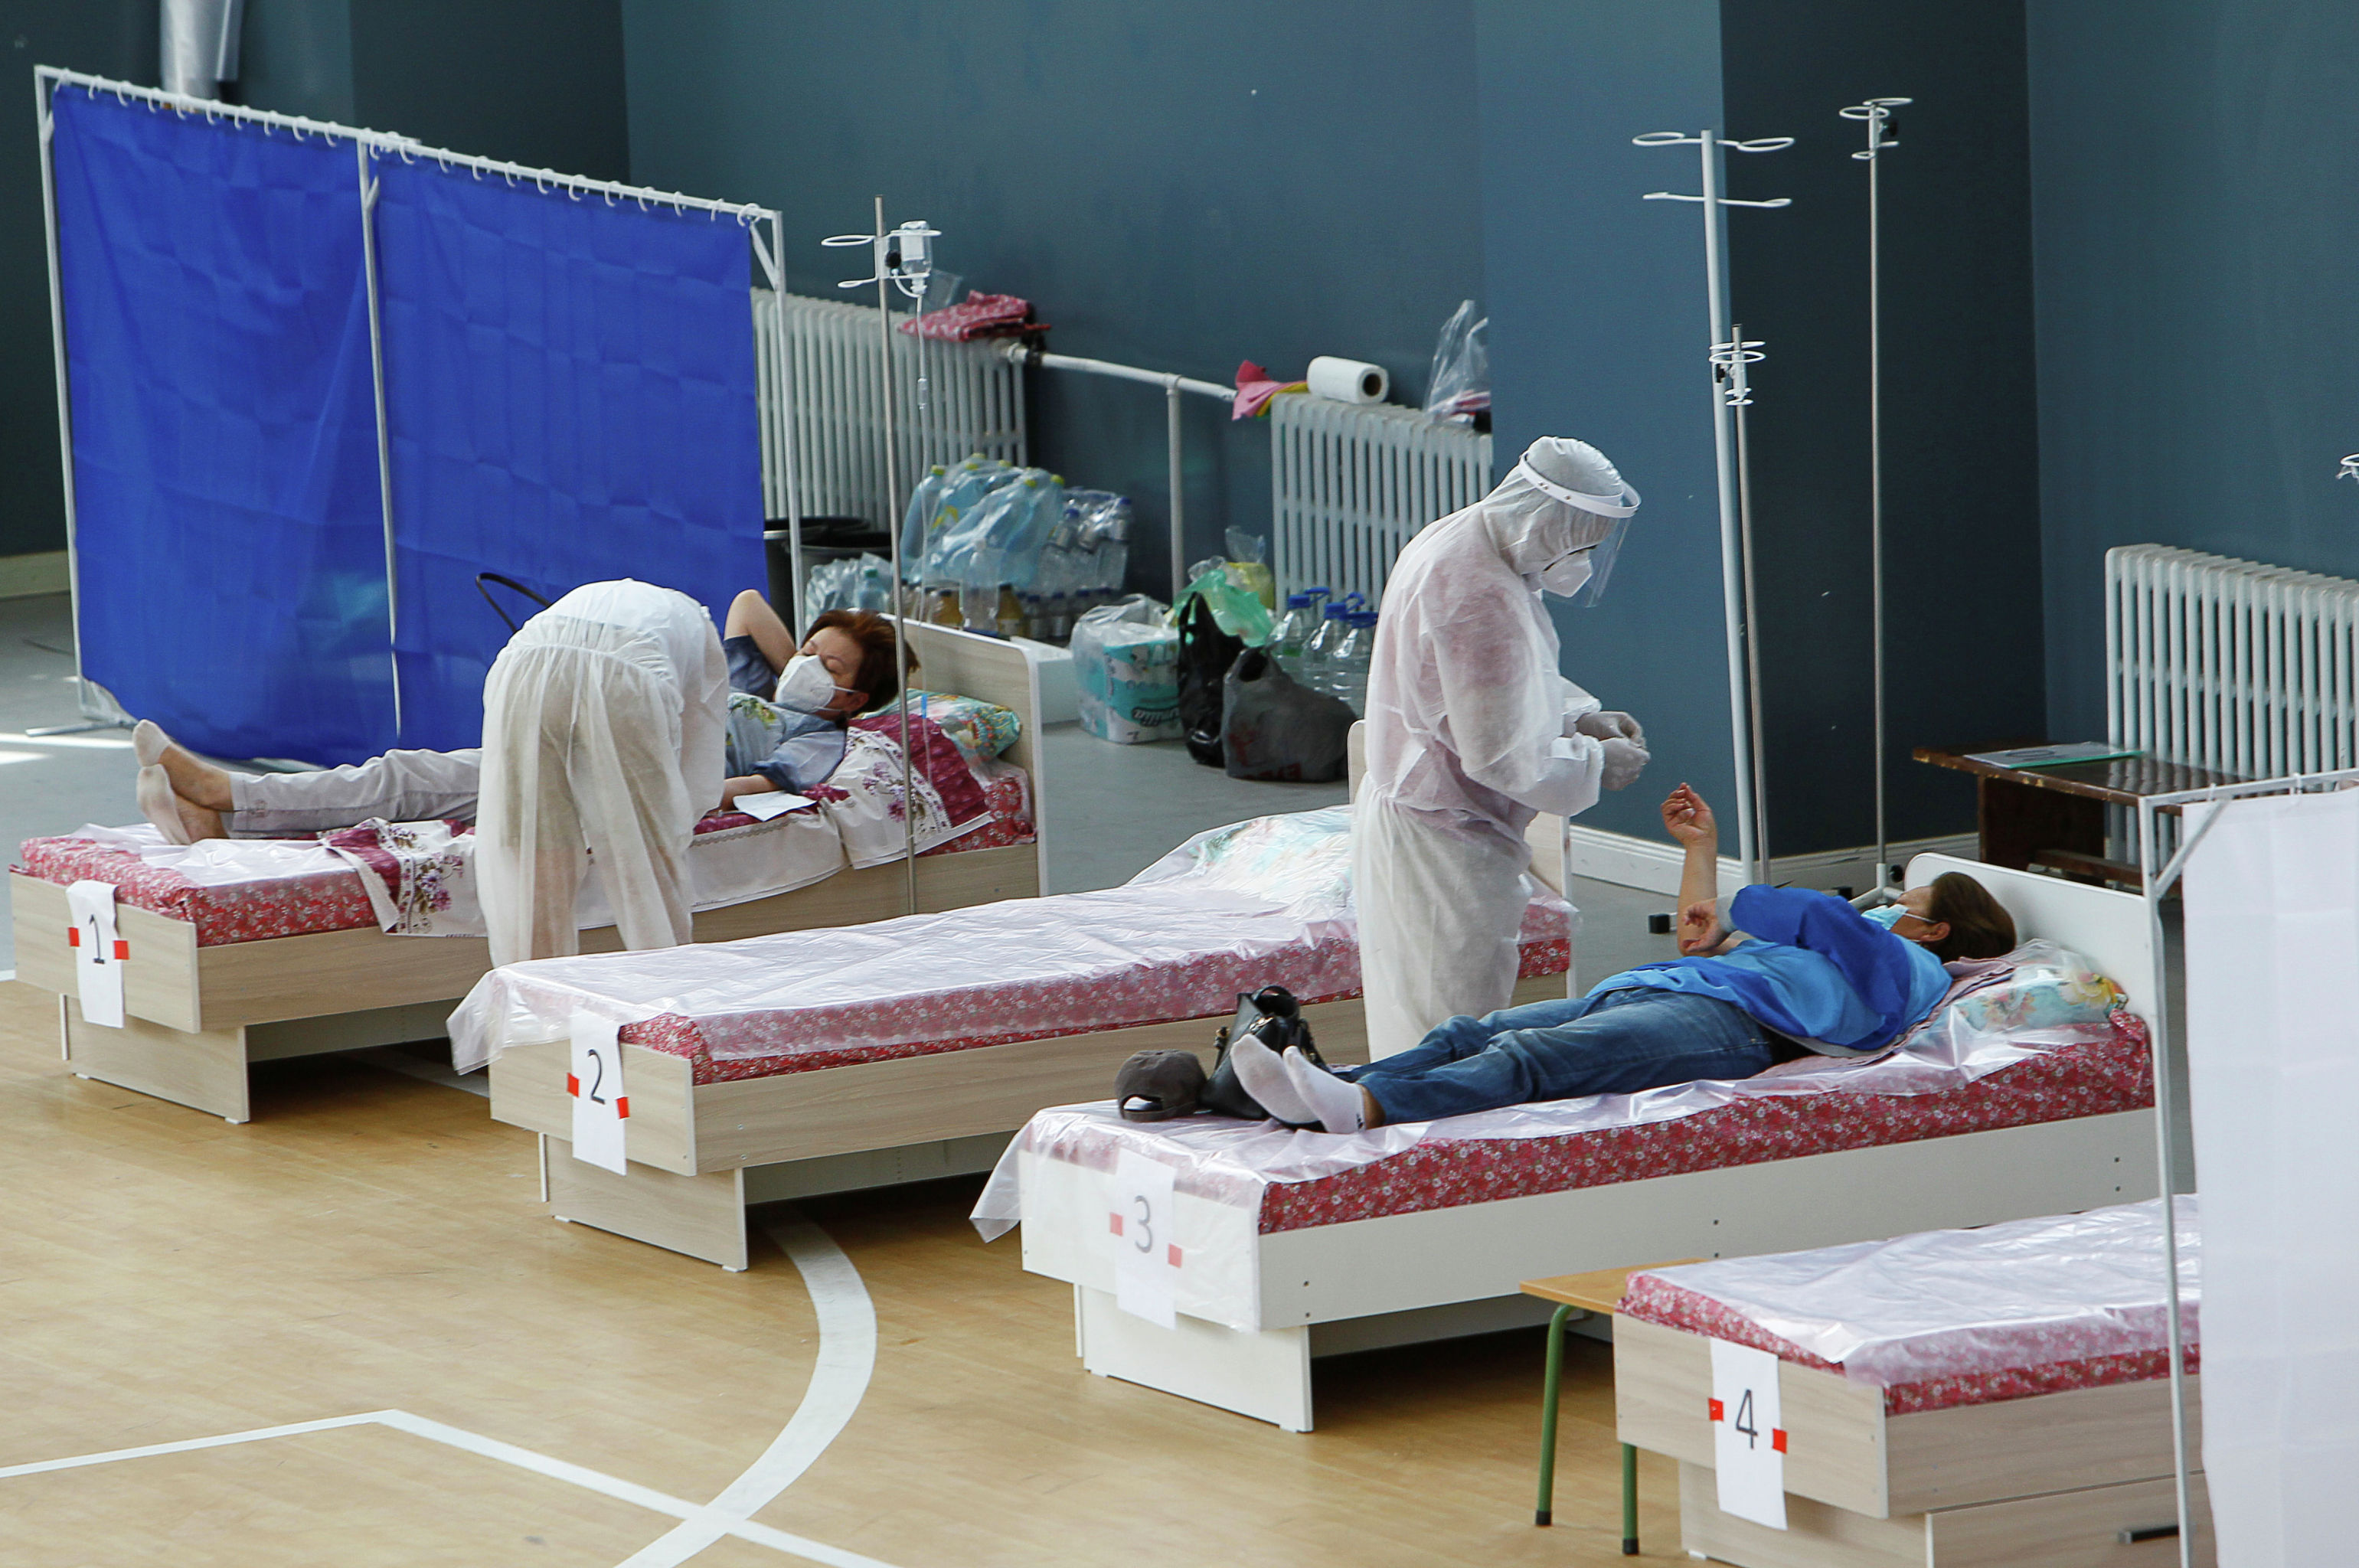 Медицинские специалисты, носящие средства индивидуальной защиты (СИЗ), лечат пациентов в дневном стационаре, который расположен в школьном спортзале в Бишкеке. 16 июля 2020 года